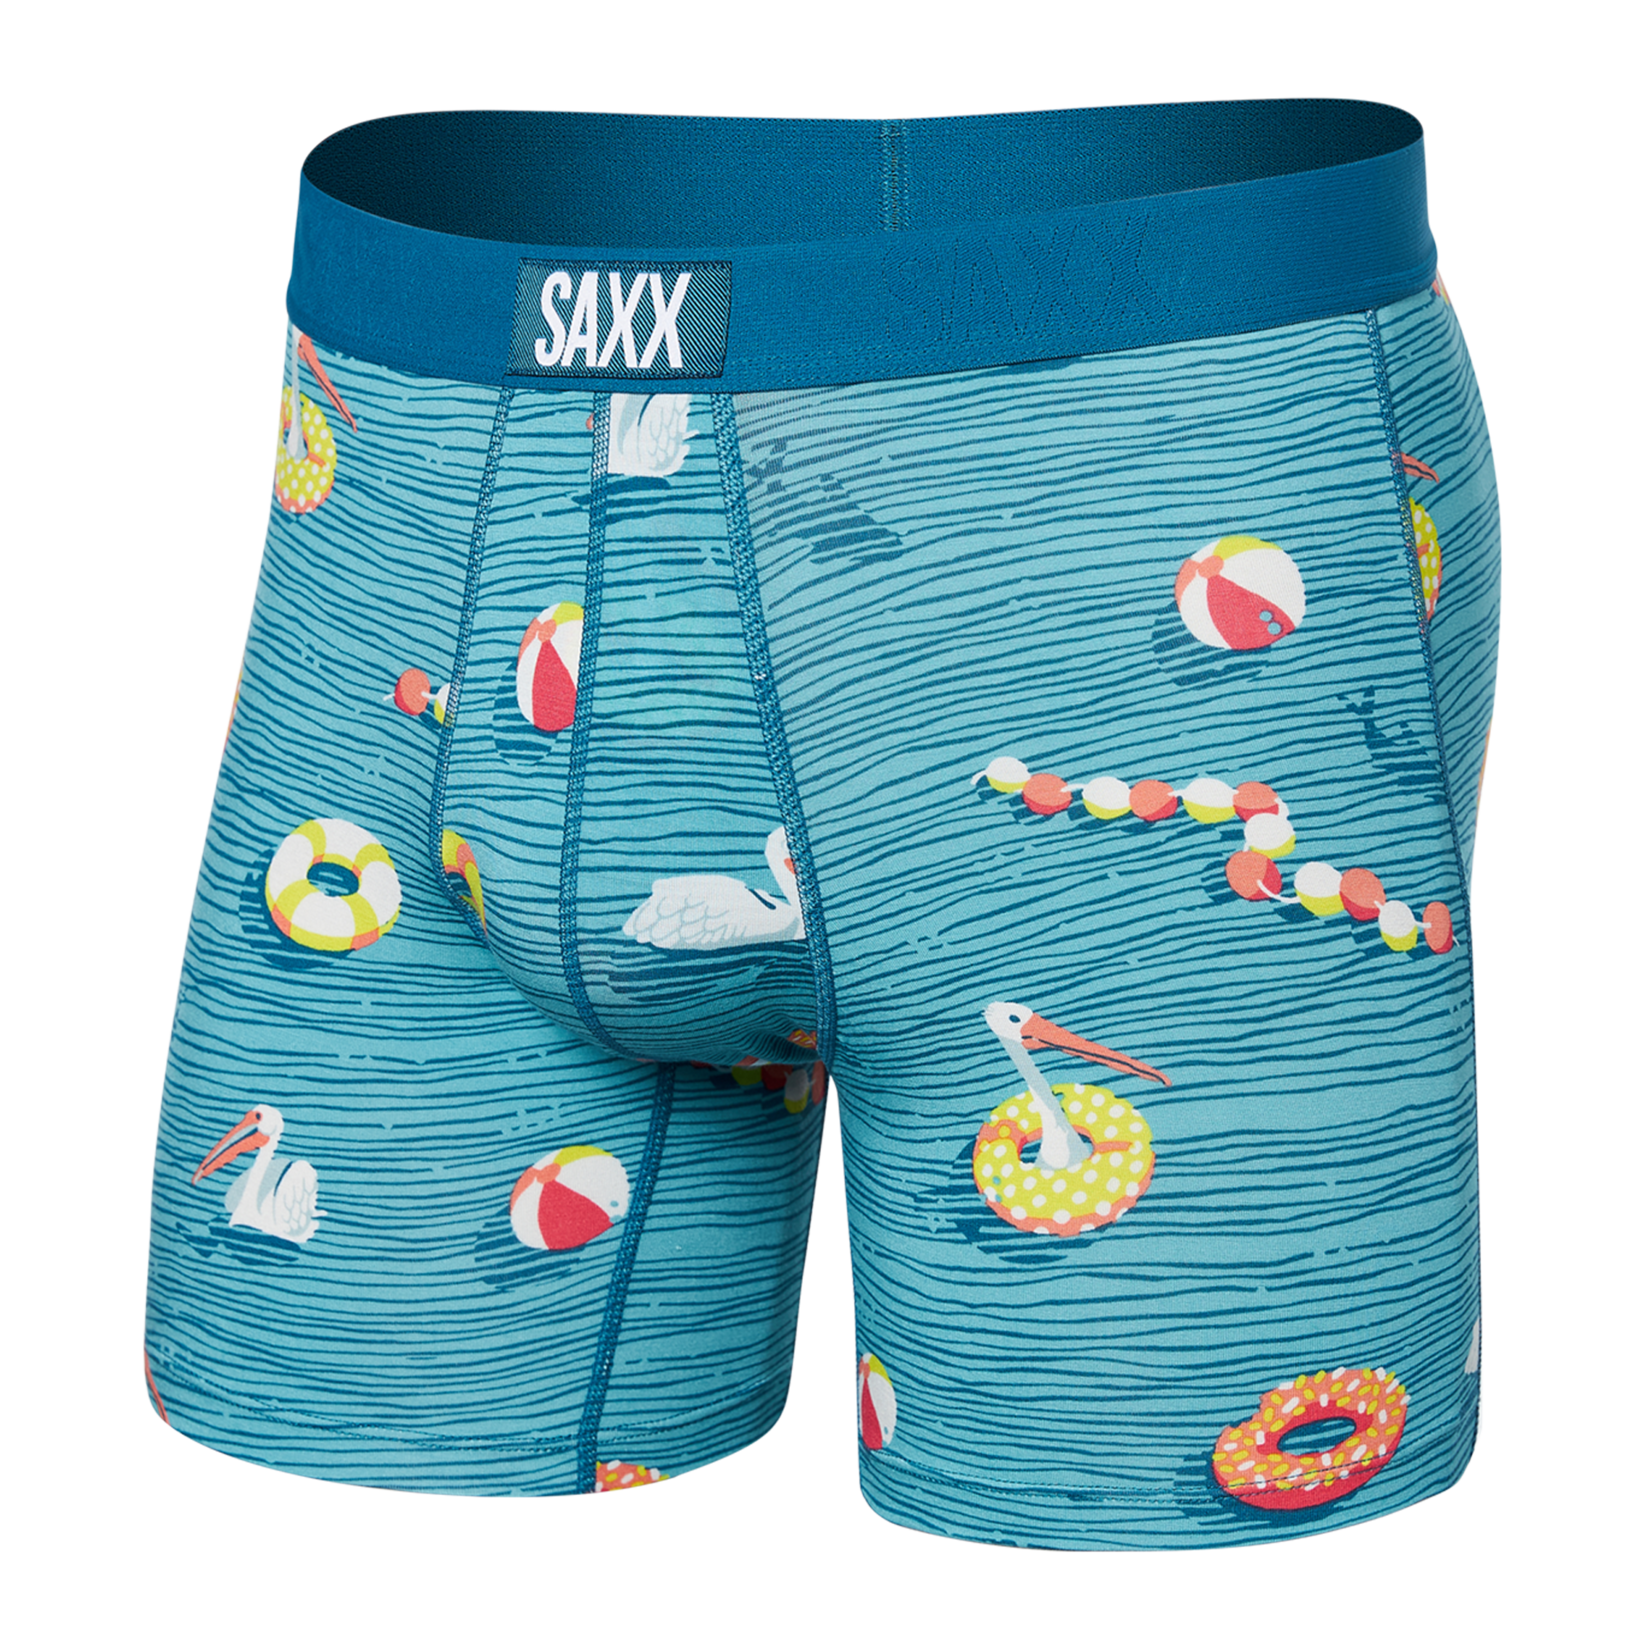 SAXX VIBE SUPER SOFT BOXER BRIEF / Swimmers- Sea Level